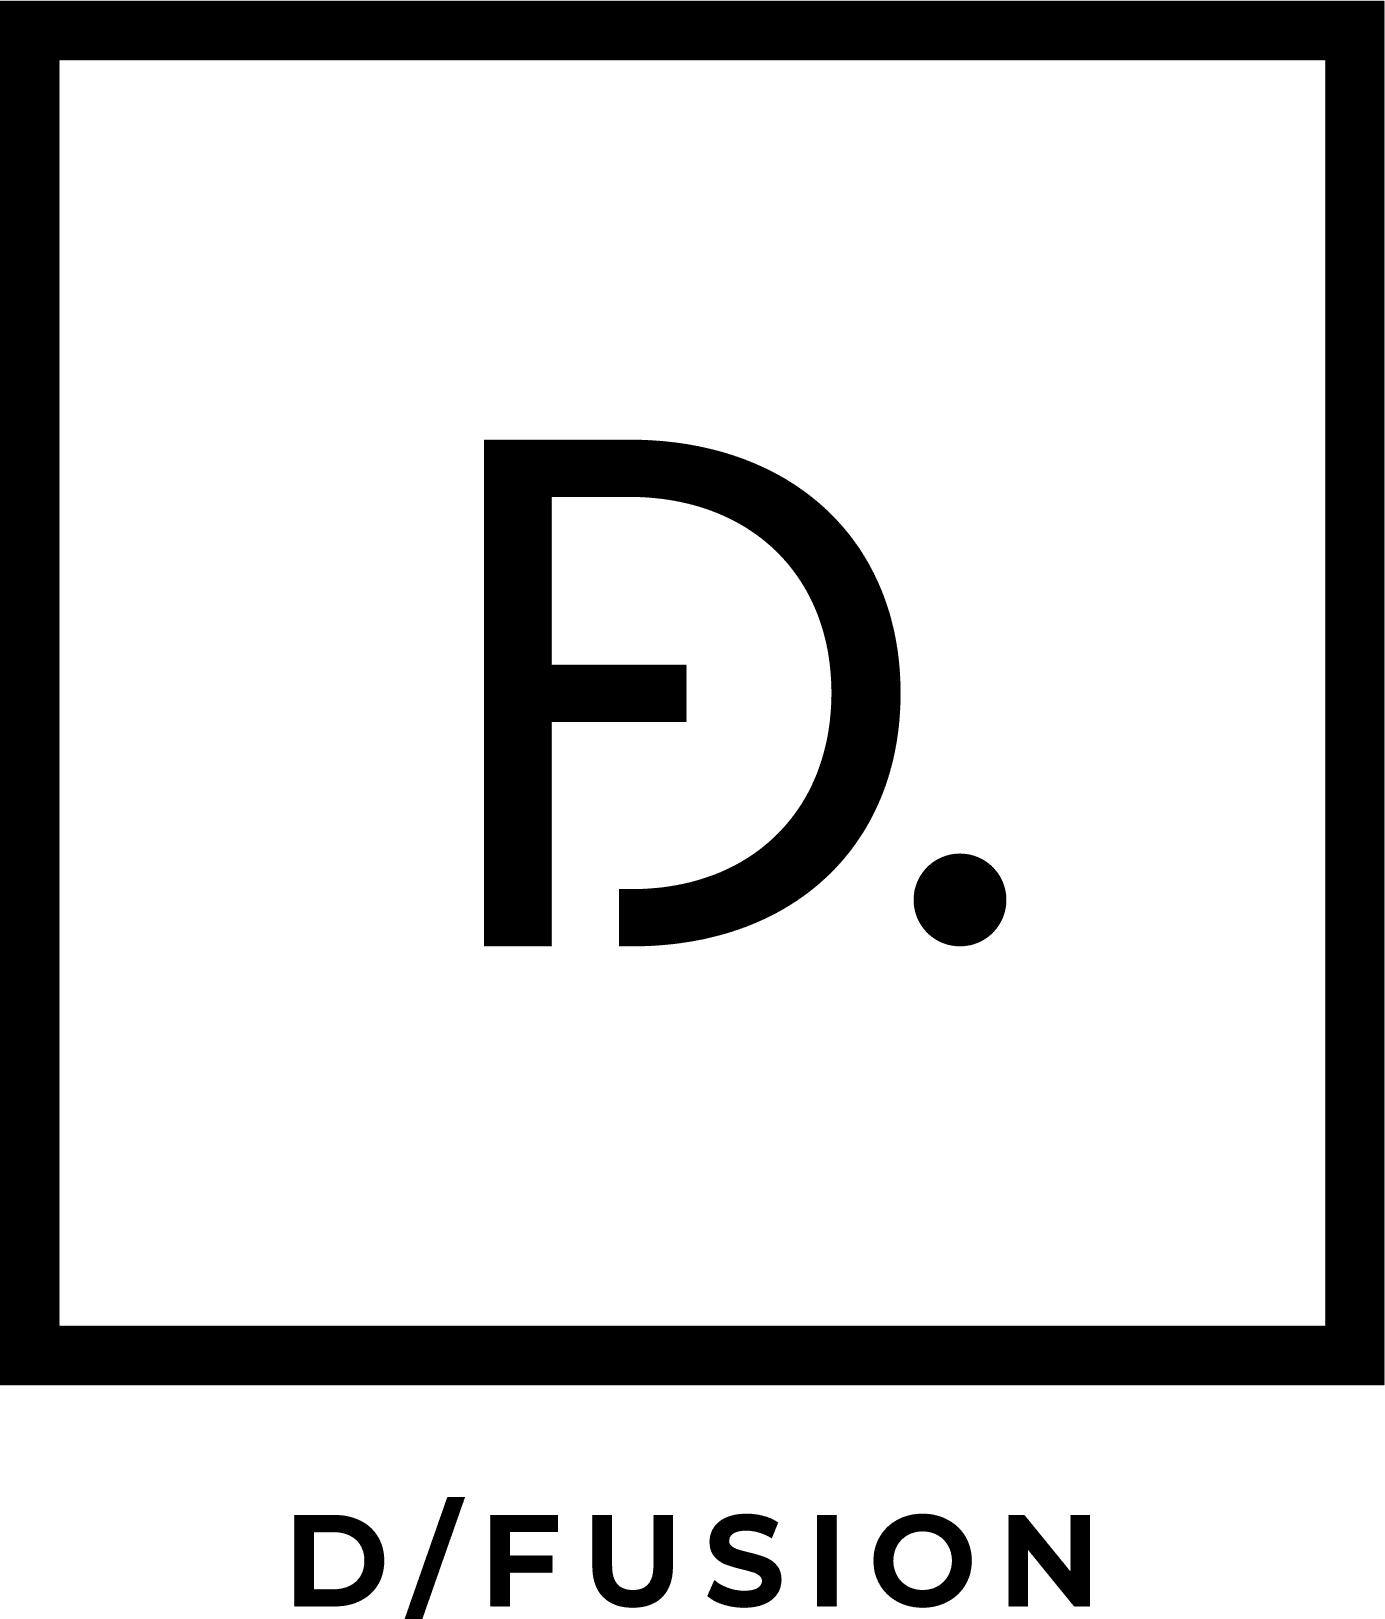 D/Fusion company logo